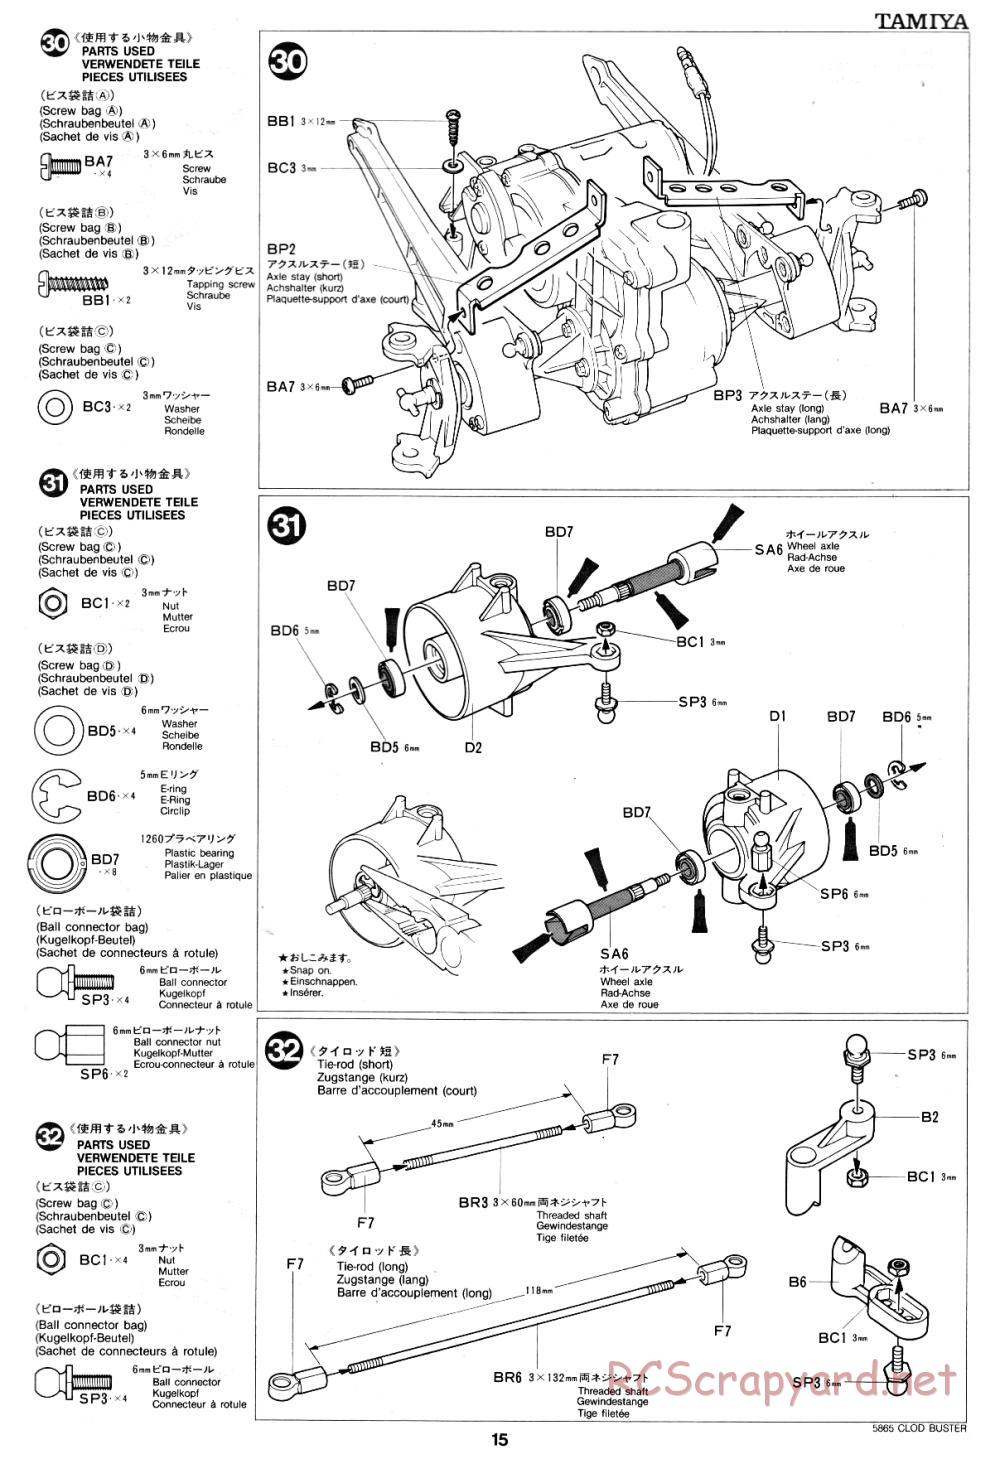 Tamiya - Clod Buster - 58065 - Manual - Page 15